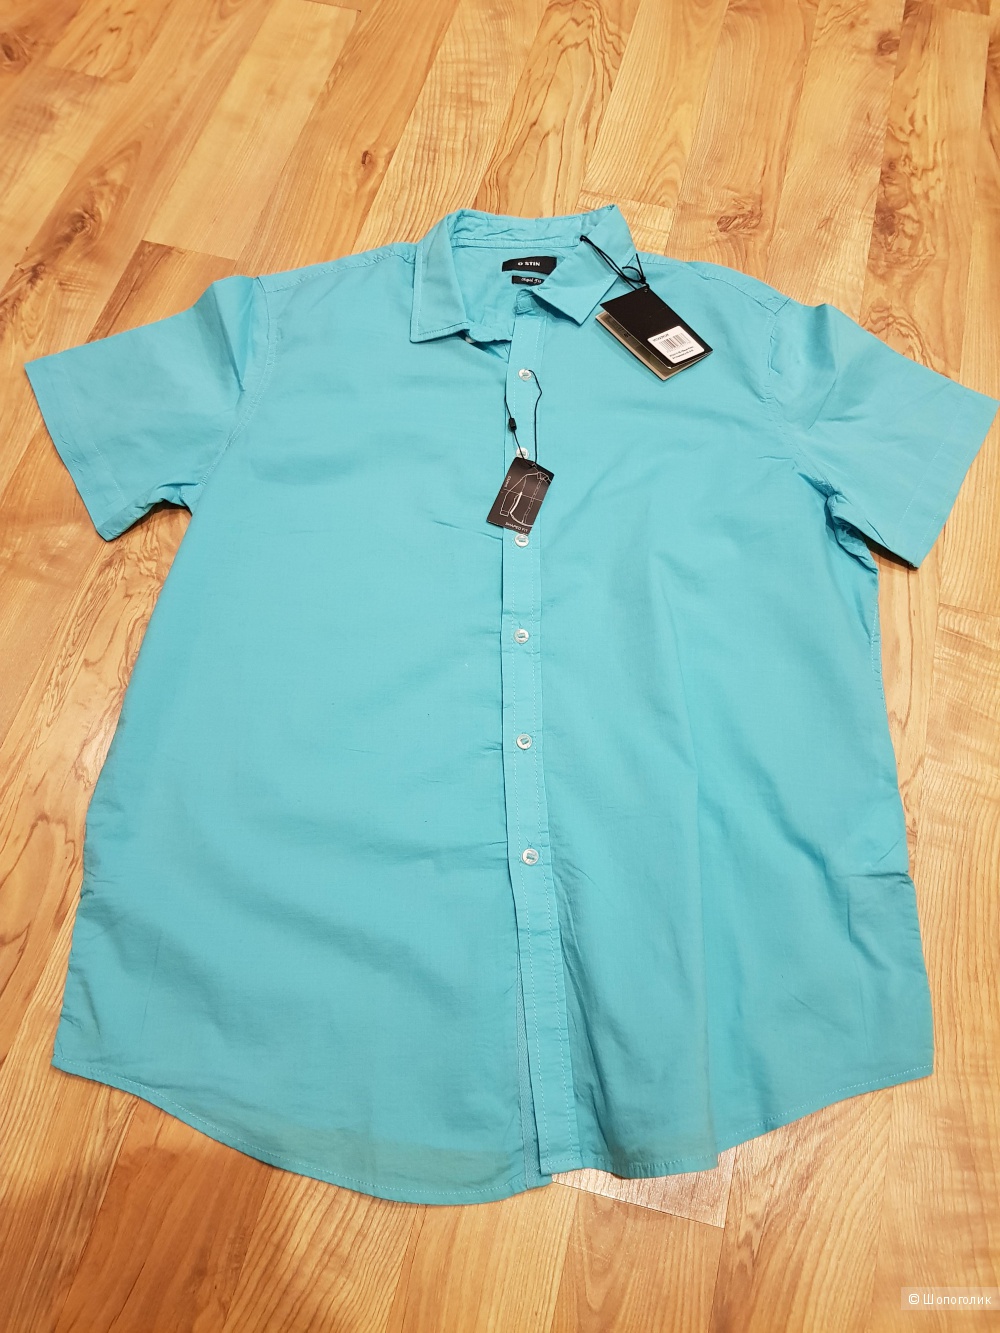 Мужская рубашка OSTIN 54-56 размер